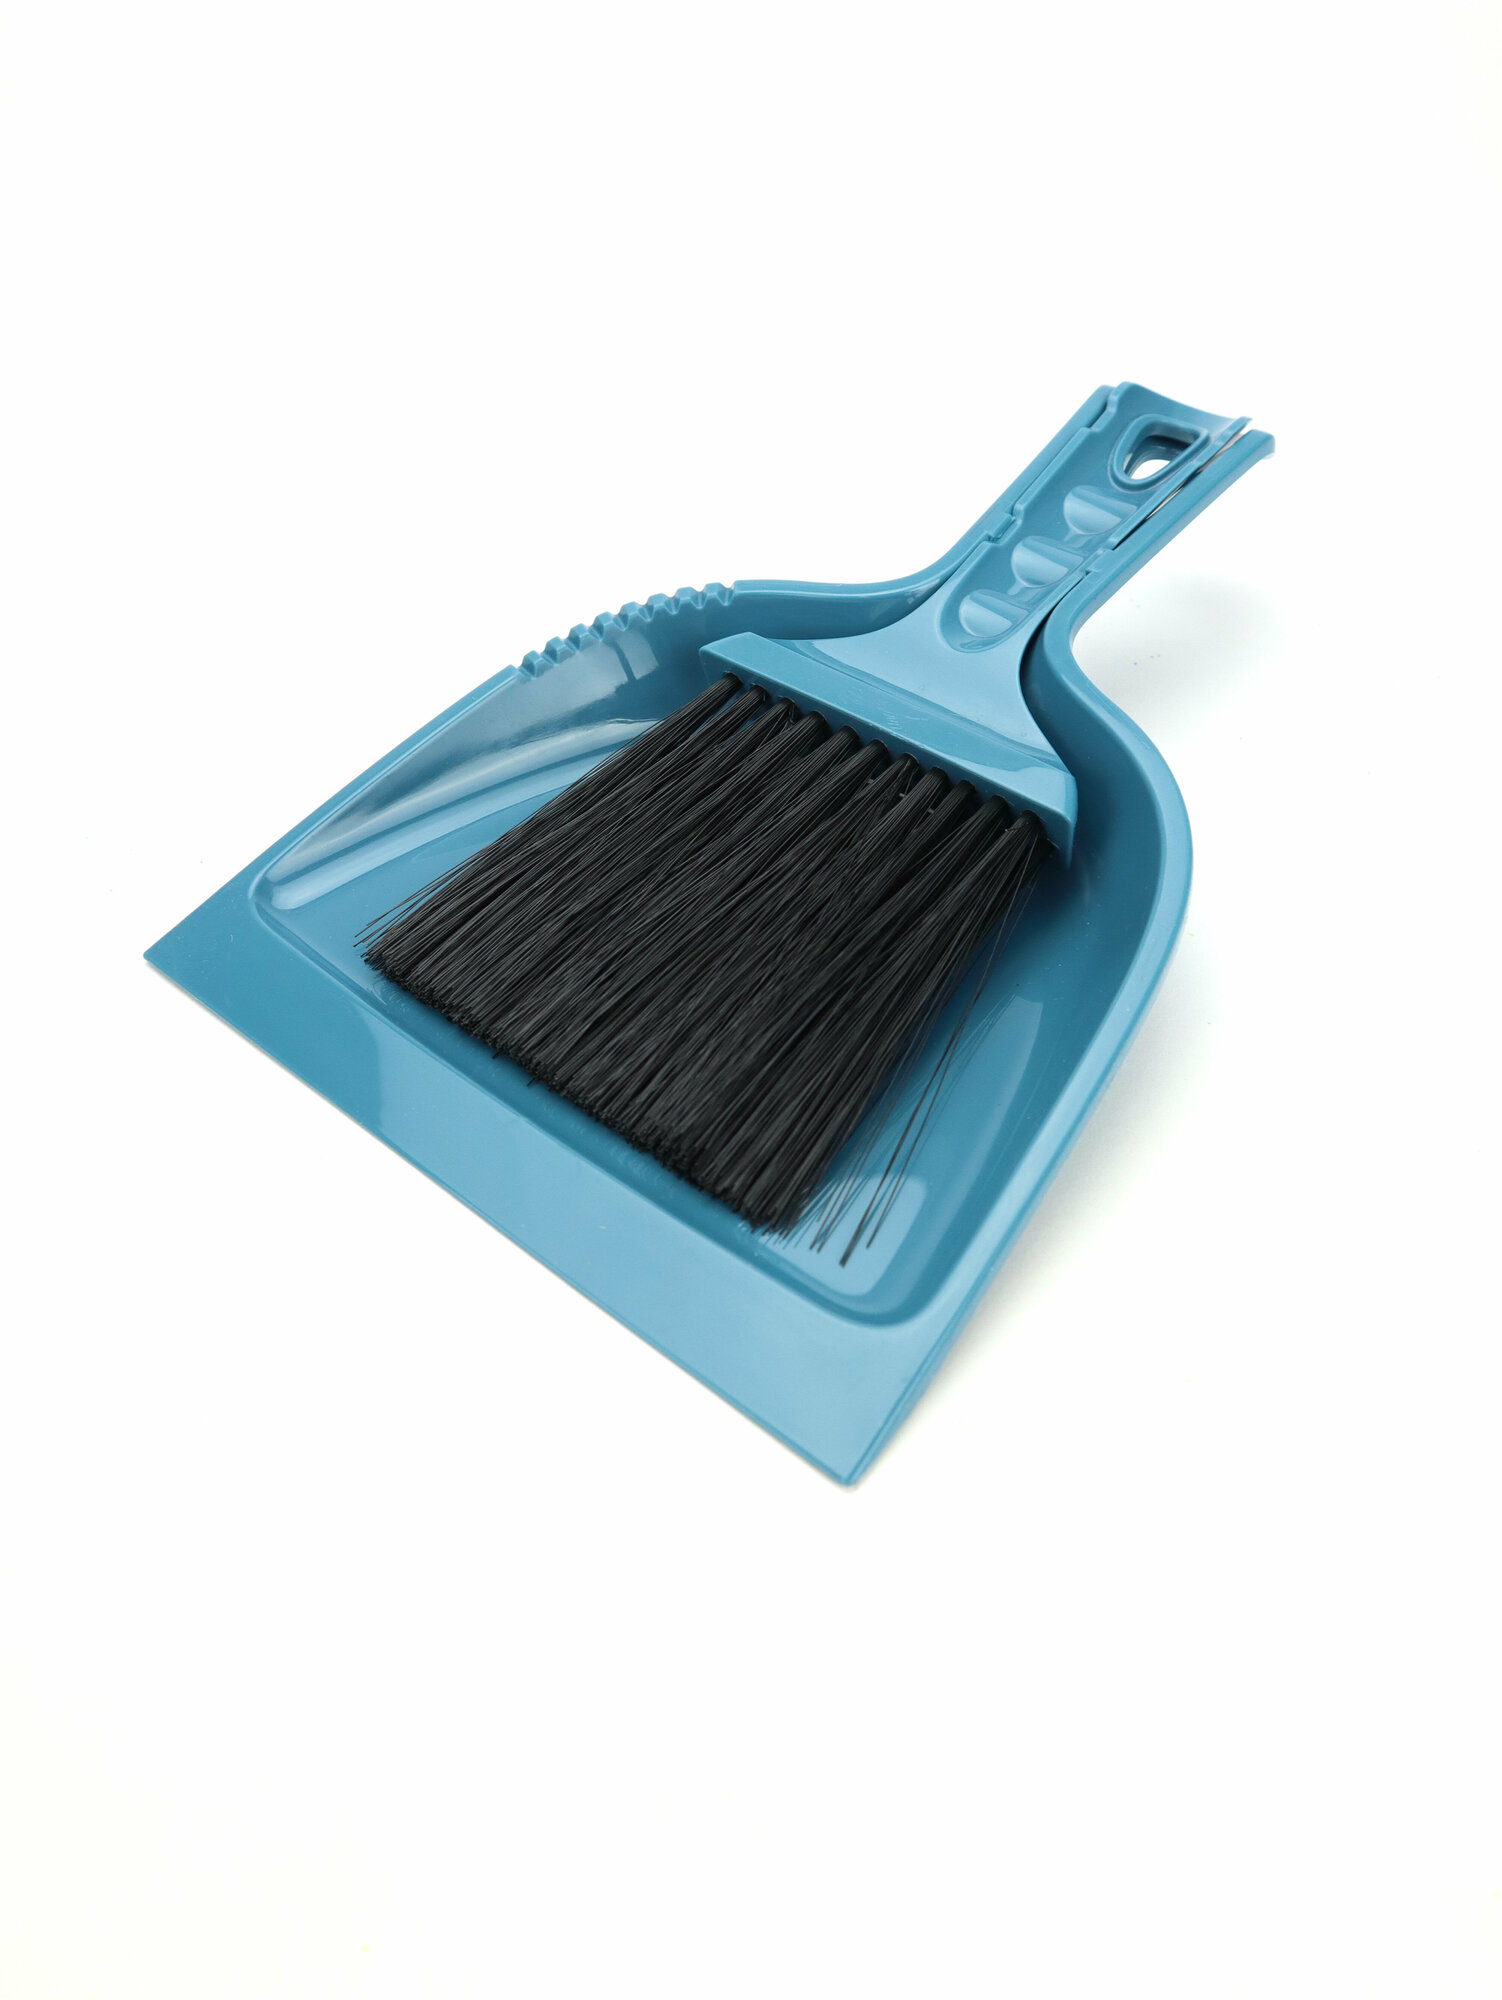 Комплект миниатюрная щетка-сметка с совком для хозяйственных целей и уборки за домашними животными Vanda, 225мм (темно-синий), ND Play